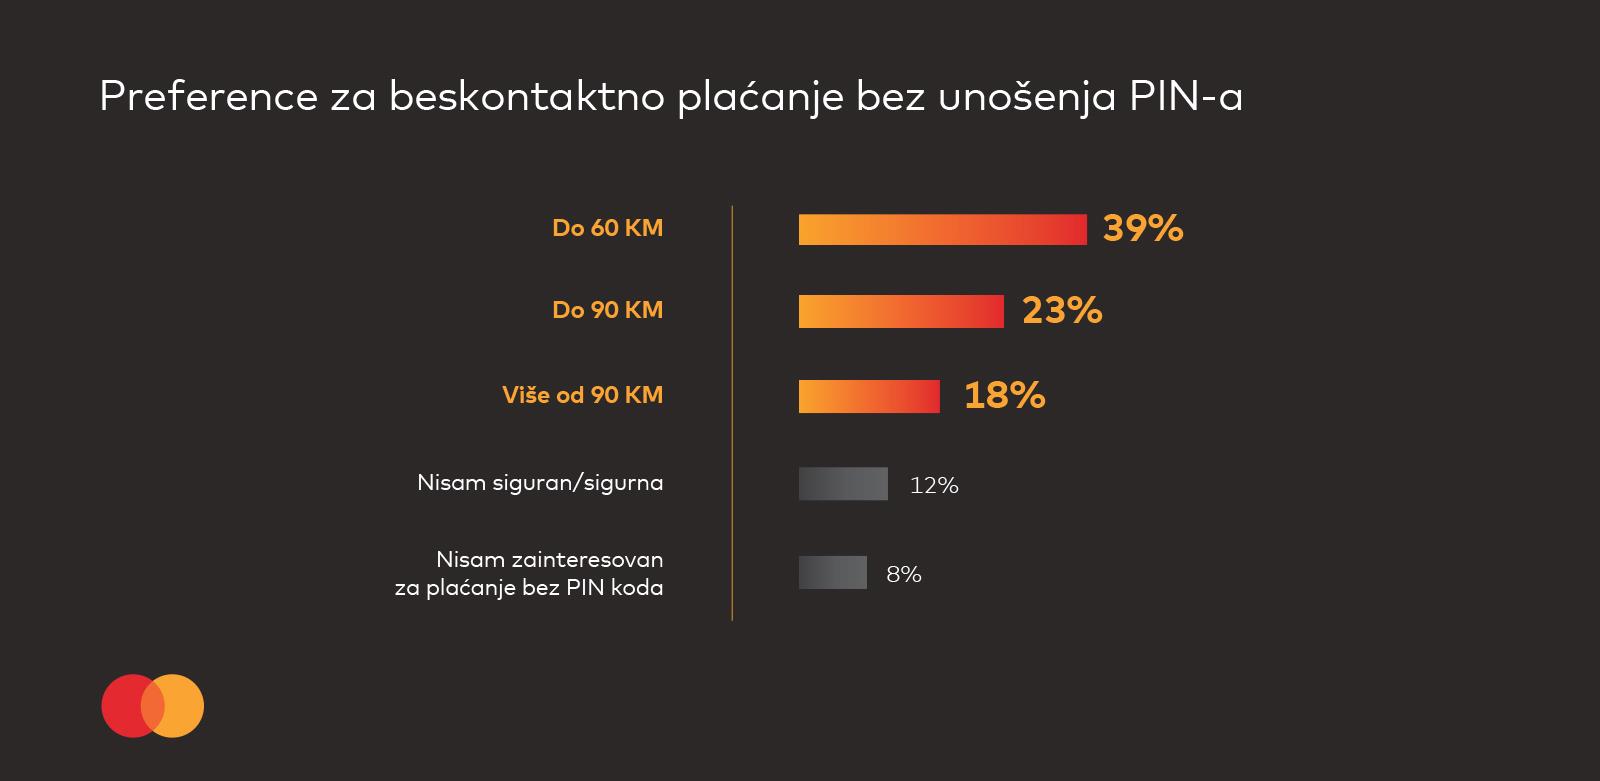 MasterIndex BiH: Četvrtina ispitanika bi da plaća do 90 KM bez PIN-a